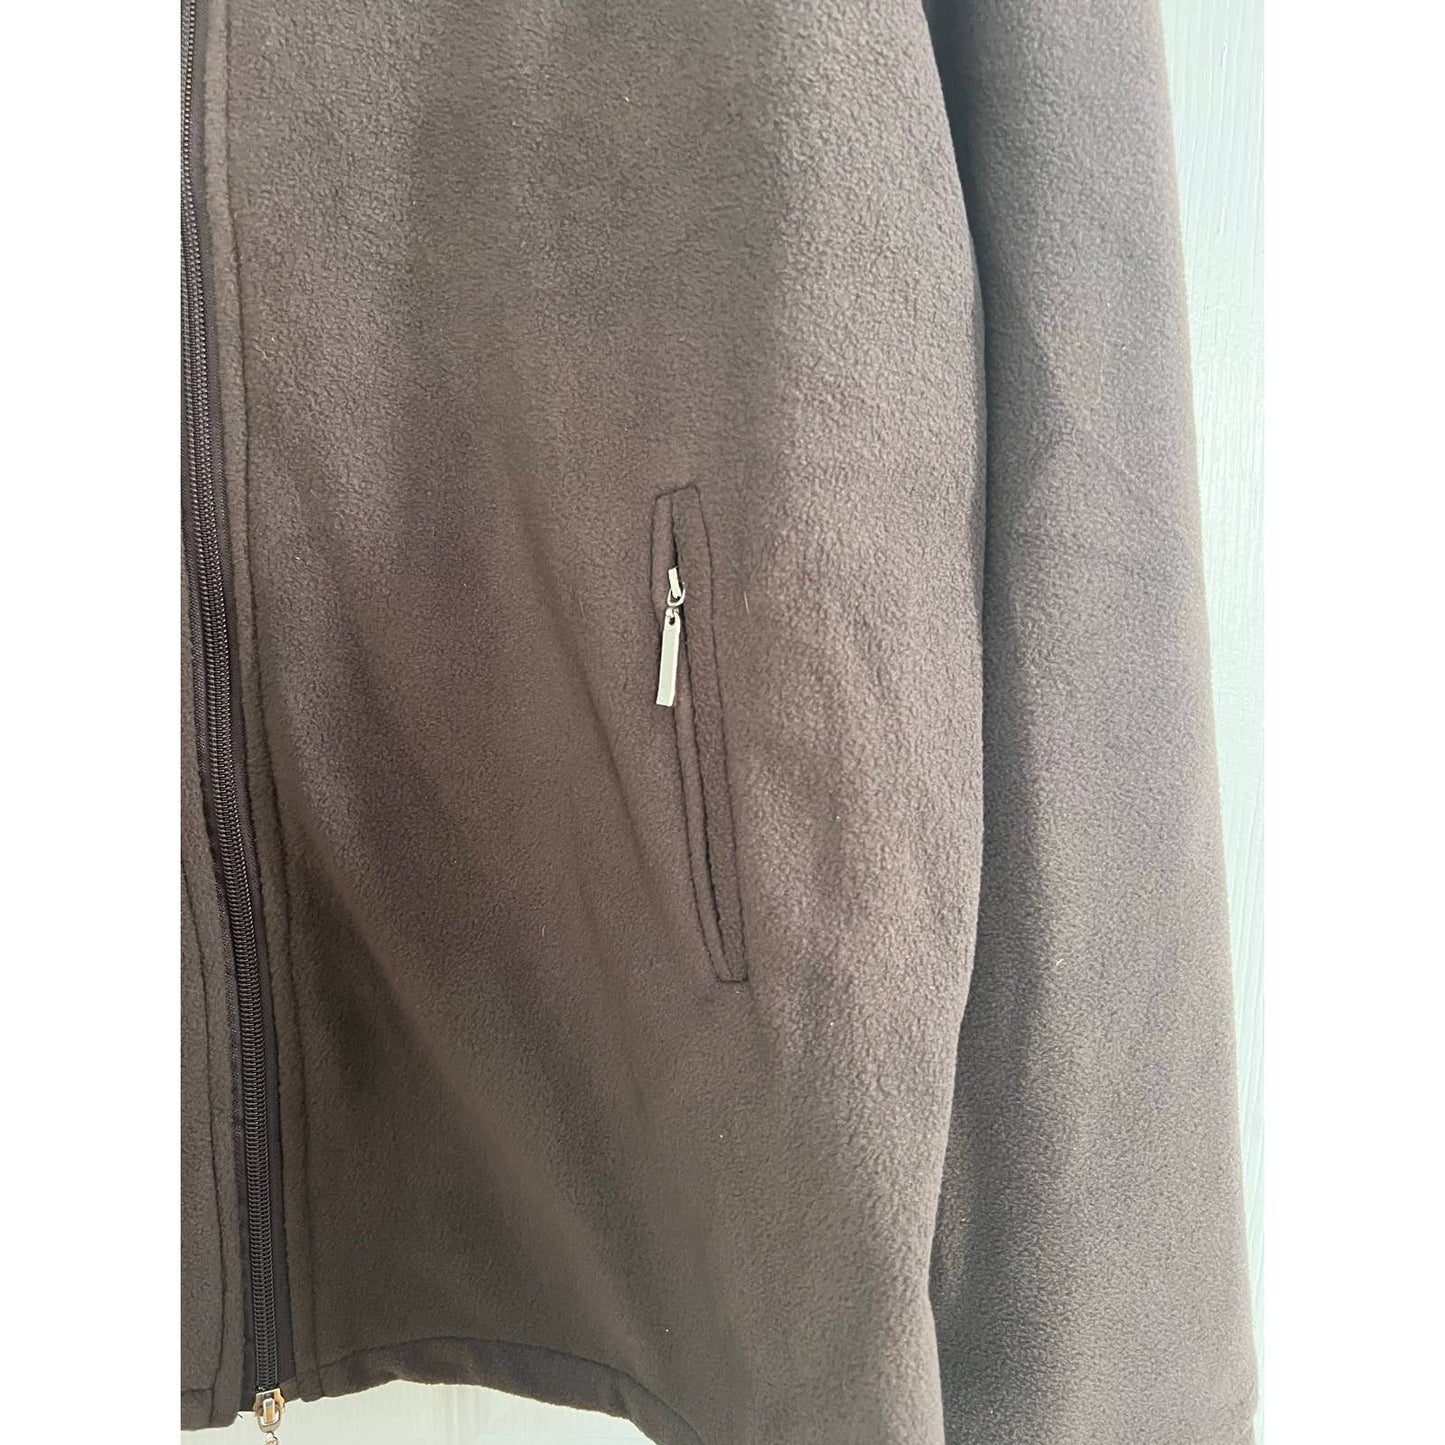 ACEVOG Women's Long Sleeve Zip Up Fleece Sweatshirt Jacket with Pocket XL